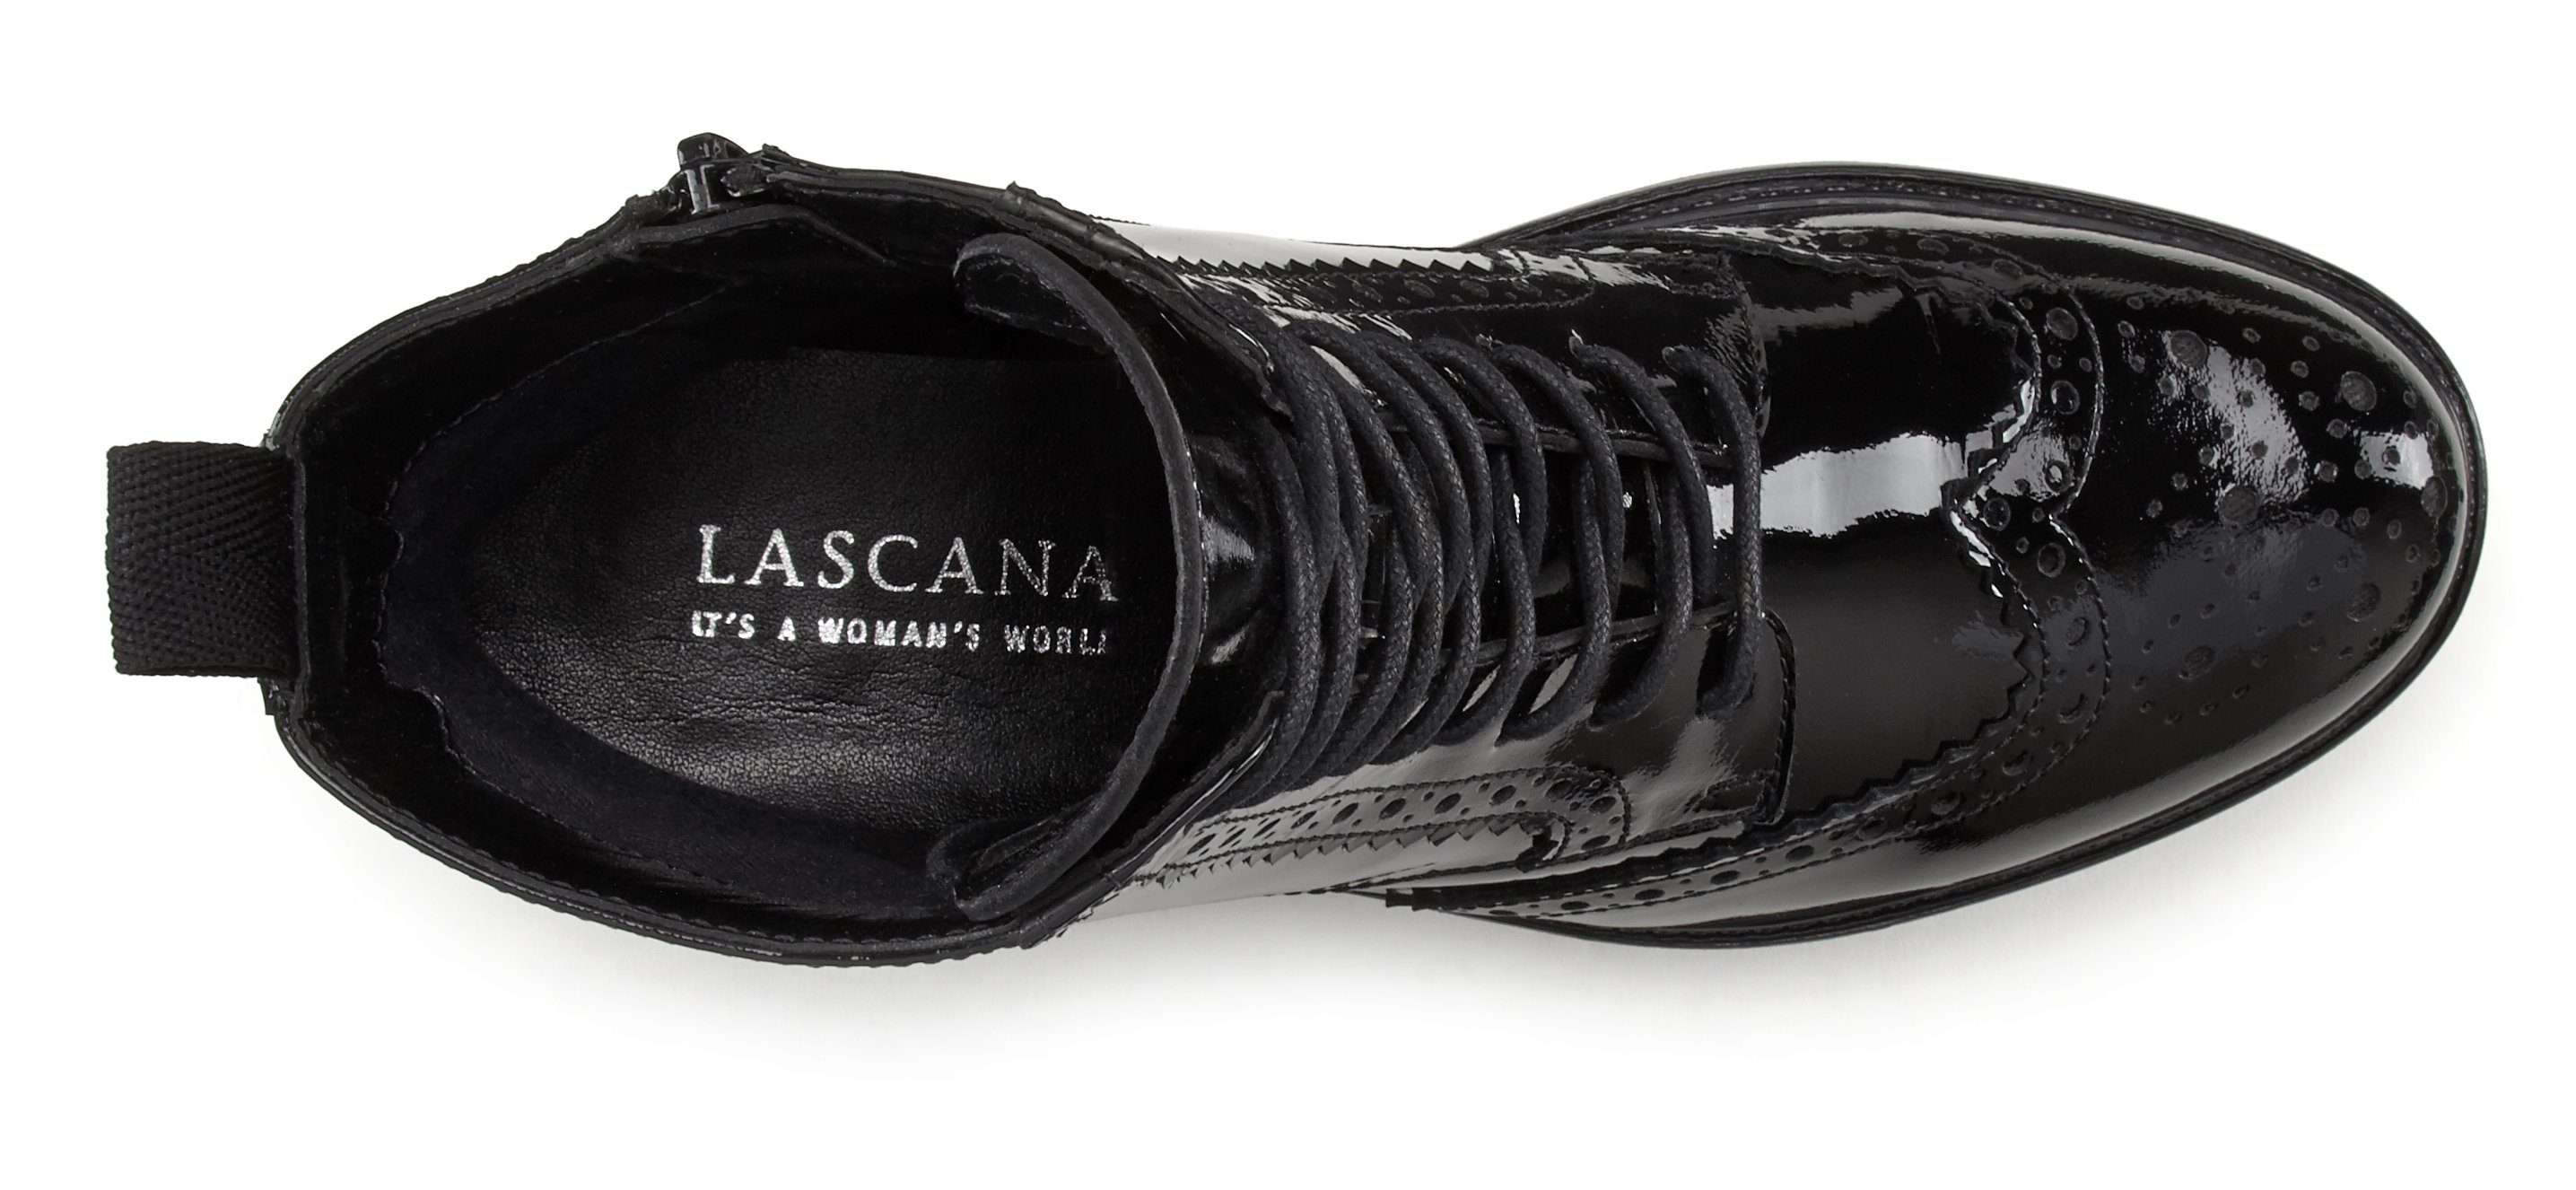 LASCANA Schnürboots Schnüren Ankle Boots, & Leder, Schnürstiefelette, schwarz-shiny Reißverschluss